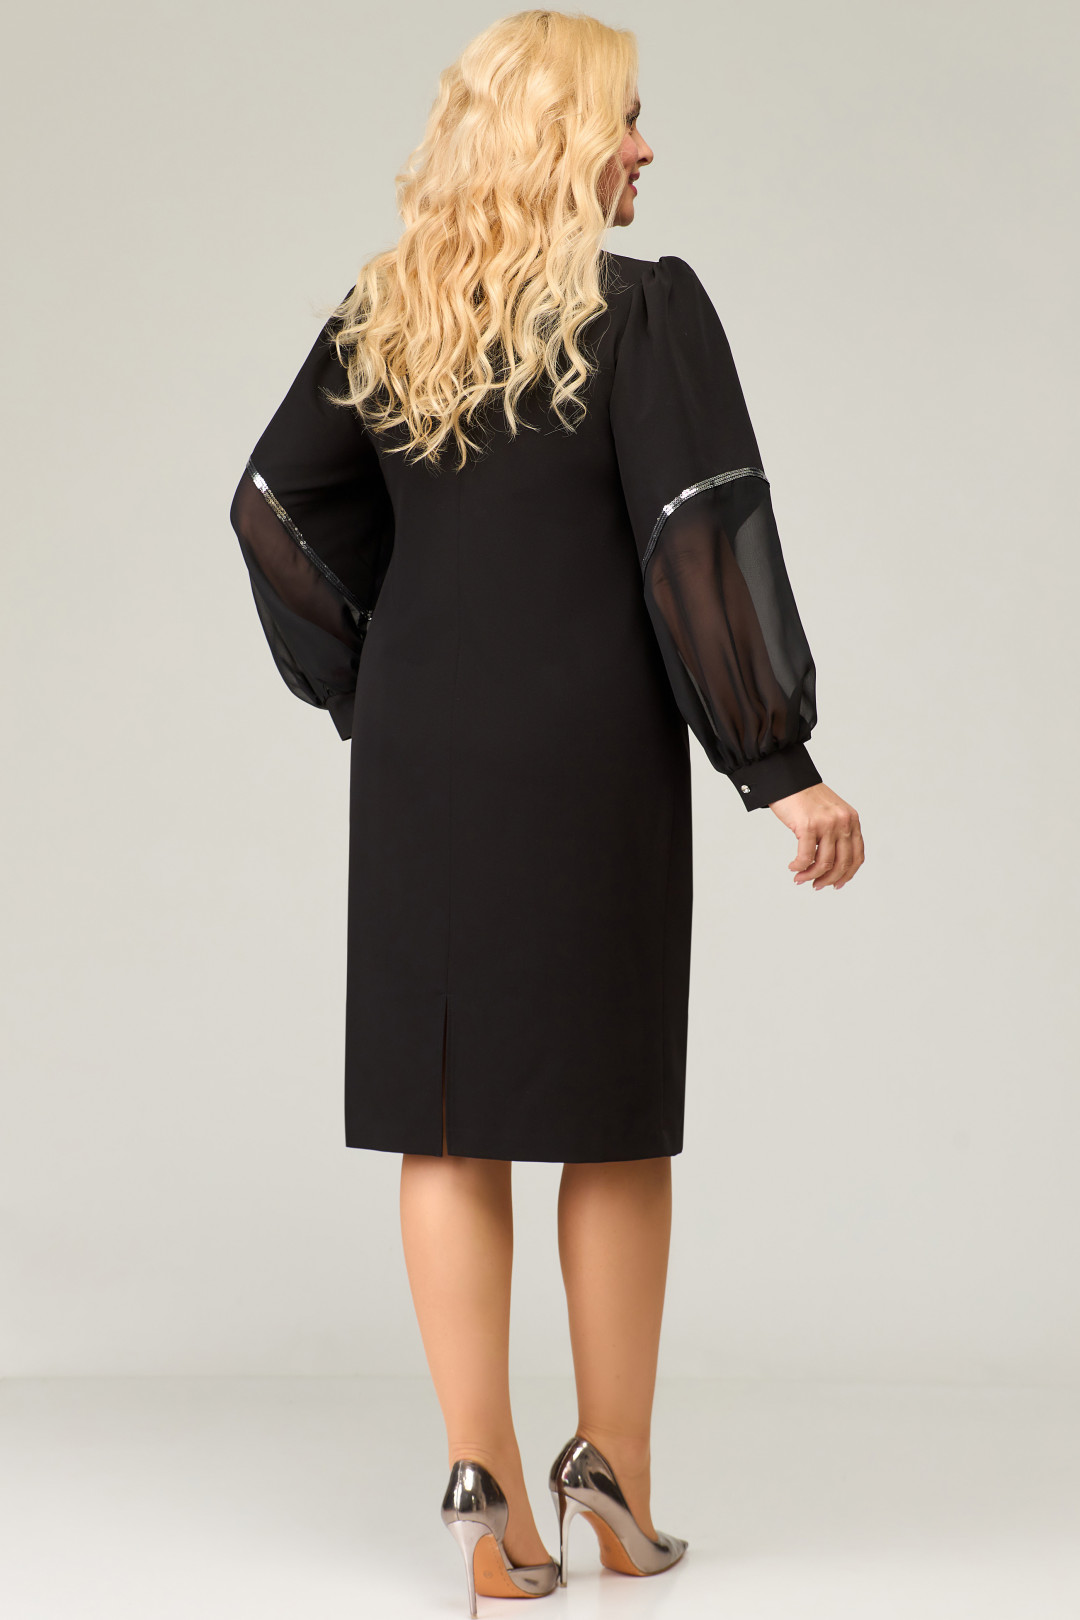 Платье Светлана-Стиль 1870 черный